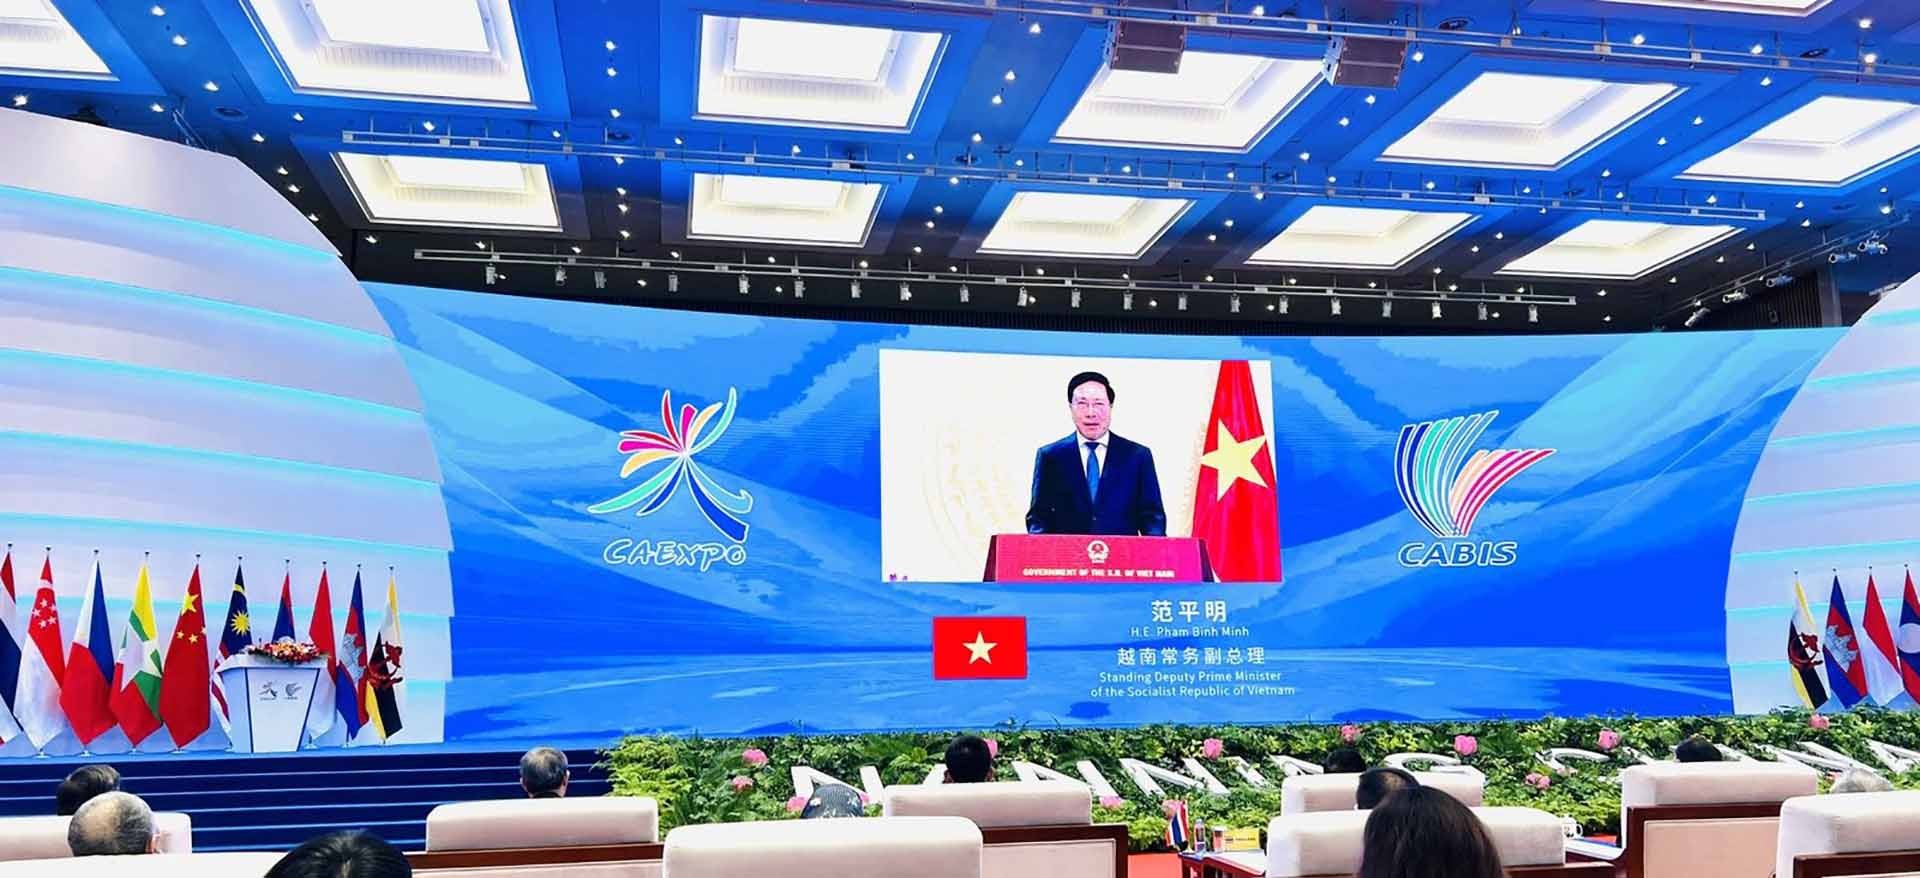 Phó Thủ tướng Thường trực Phạm Bình Minh dự Lễ khai mạc Hội chợ ASEAN-Trung Quốc và Hội nghị thượng đỉnh Thương mại đầu tư ASEAN-Trung Quốc